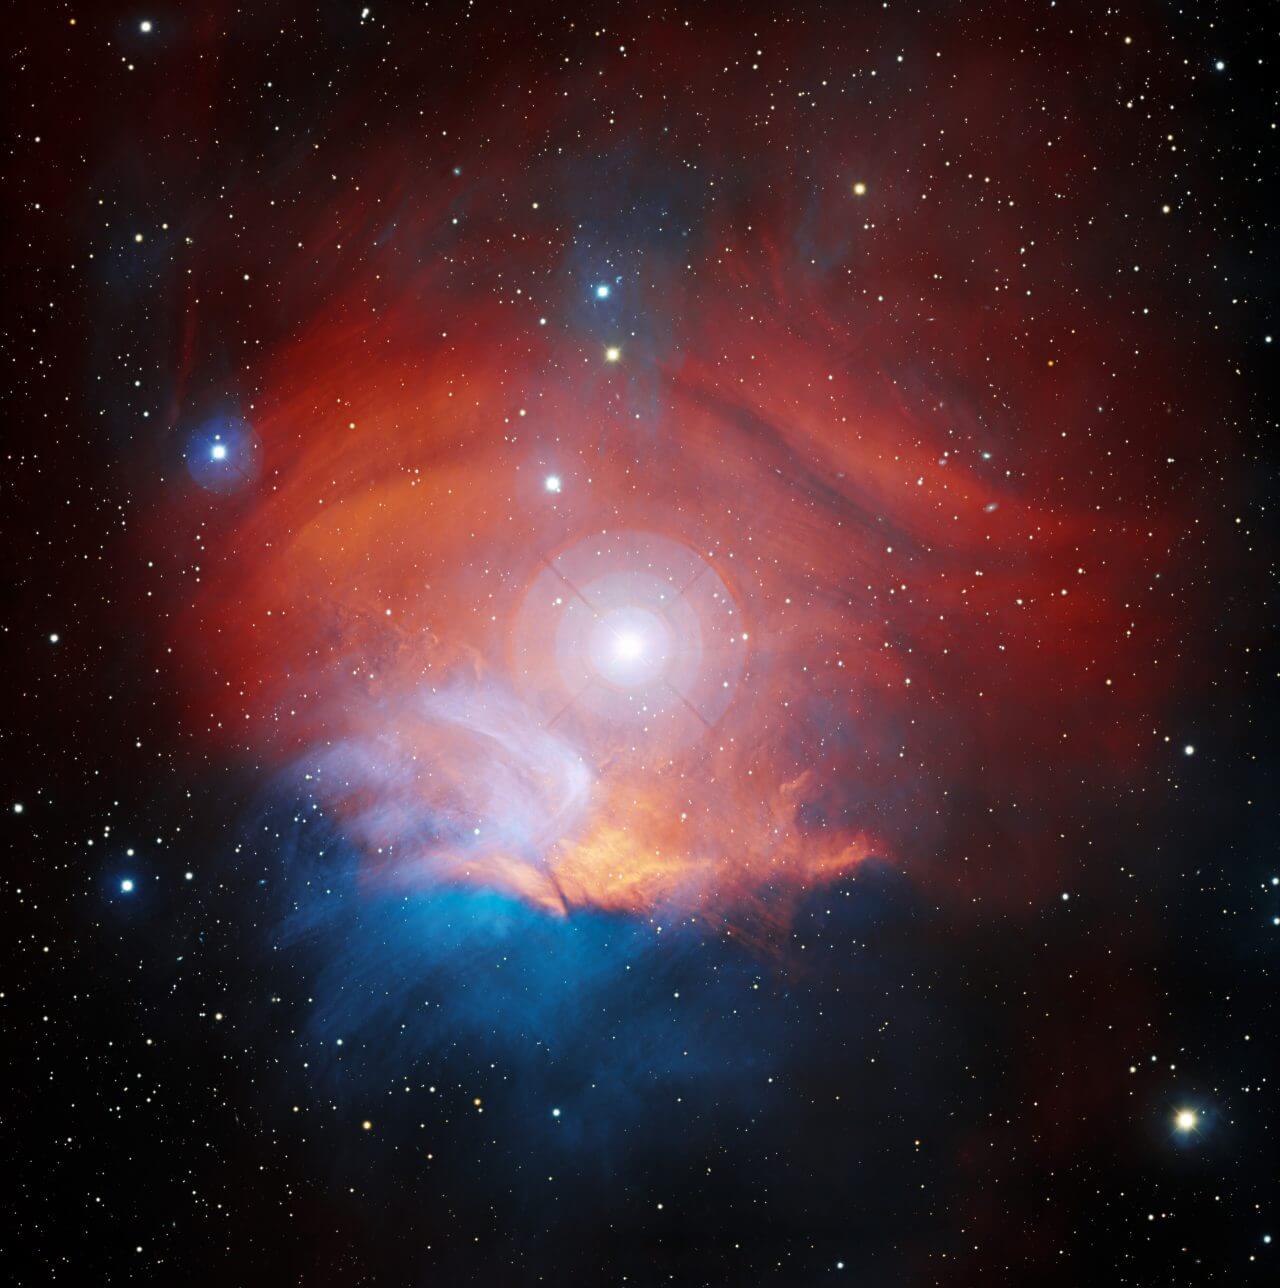 オリオン座のラズベリー星雲【今日の宇宙画像】